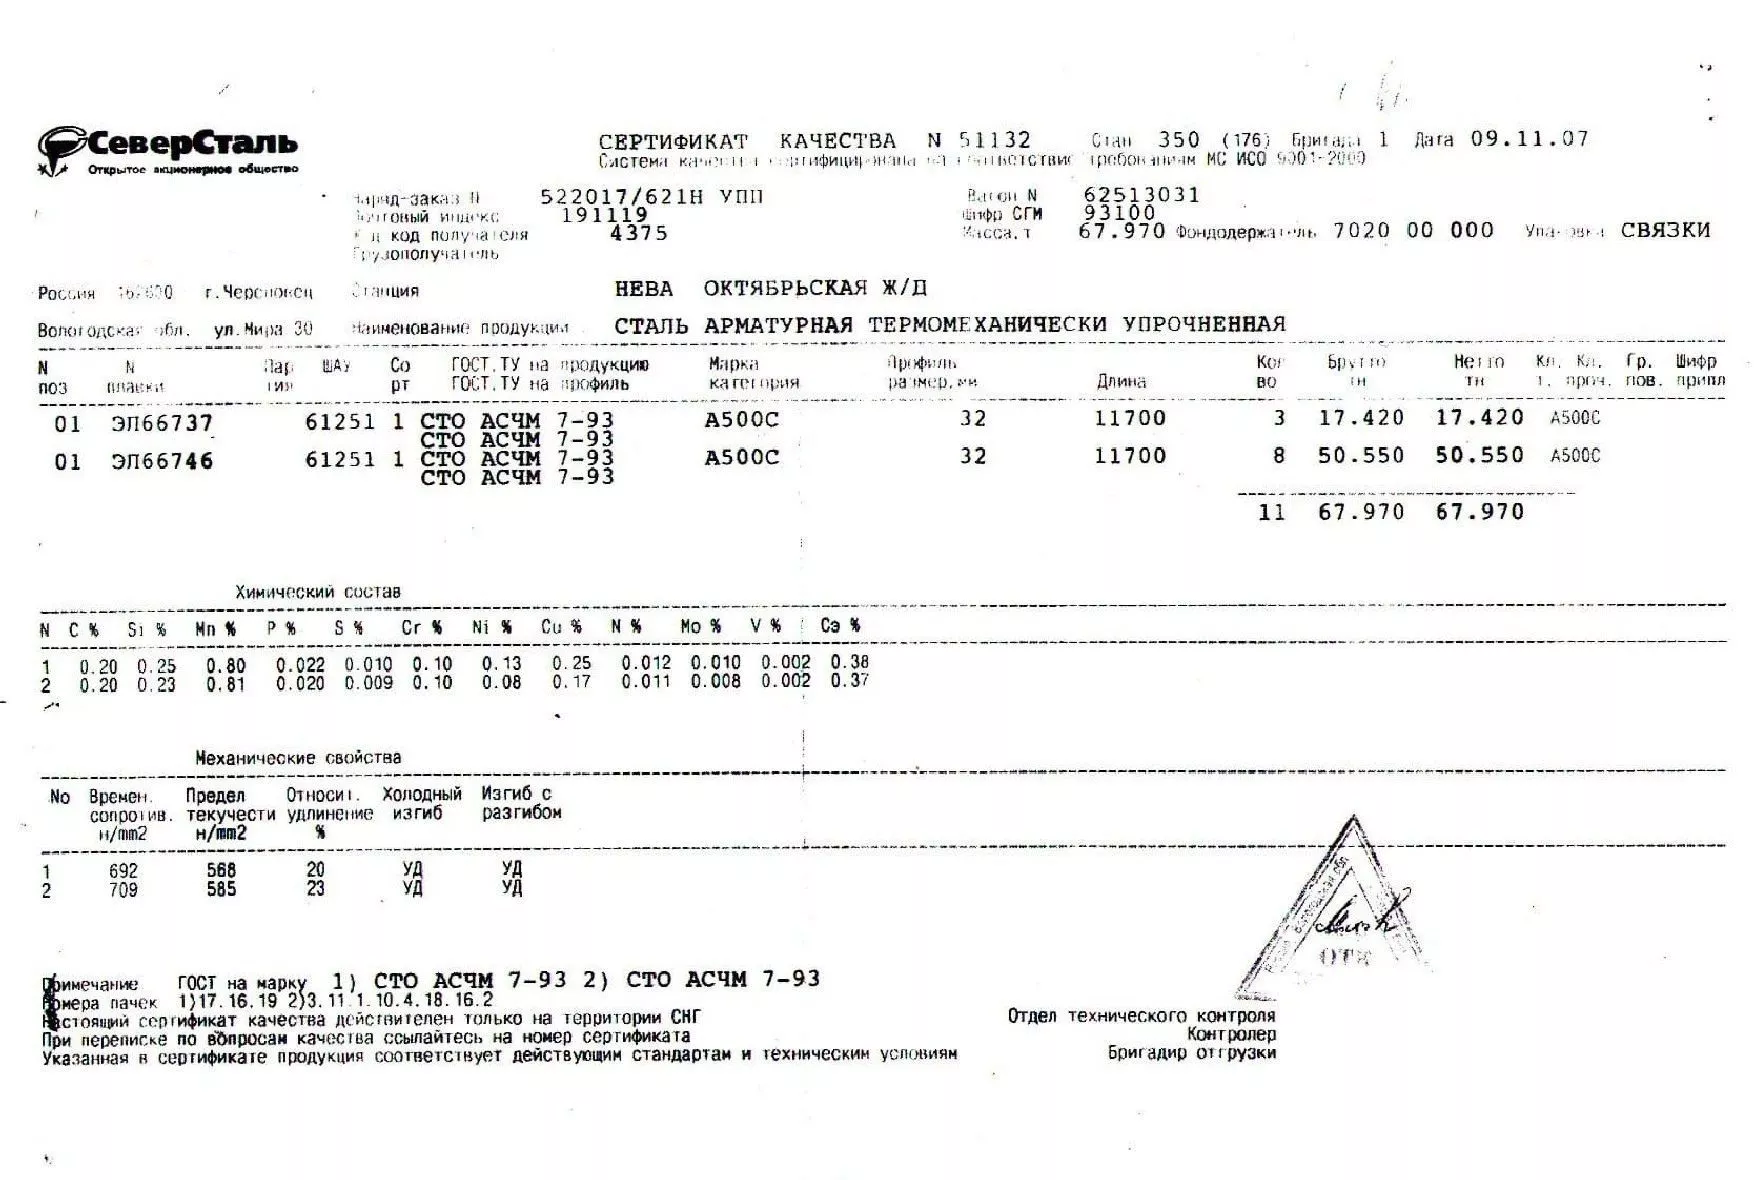 Сертификат на арматуру (класса А3) 32 (А500С) от 2007-11